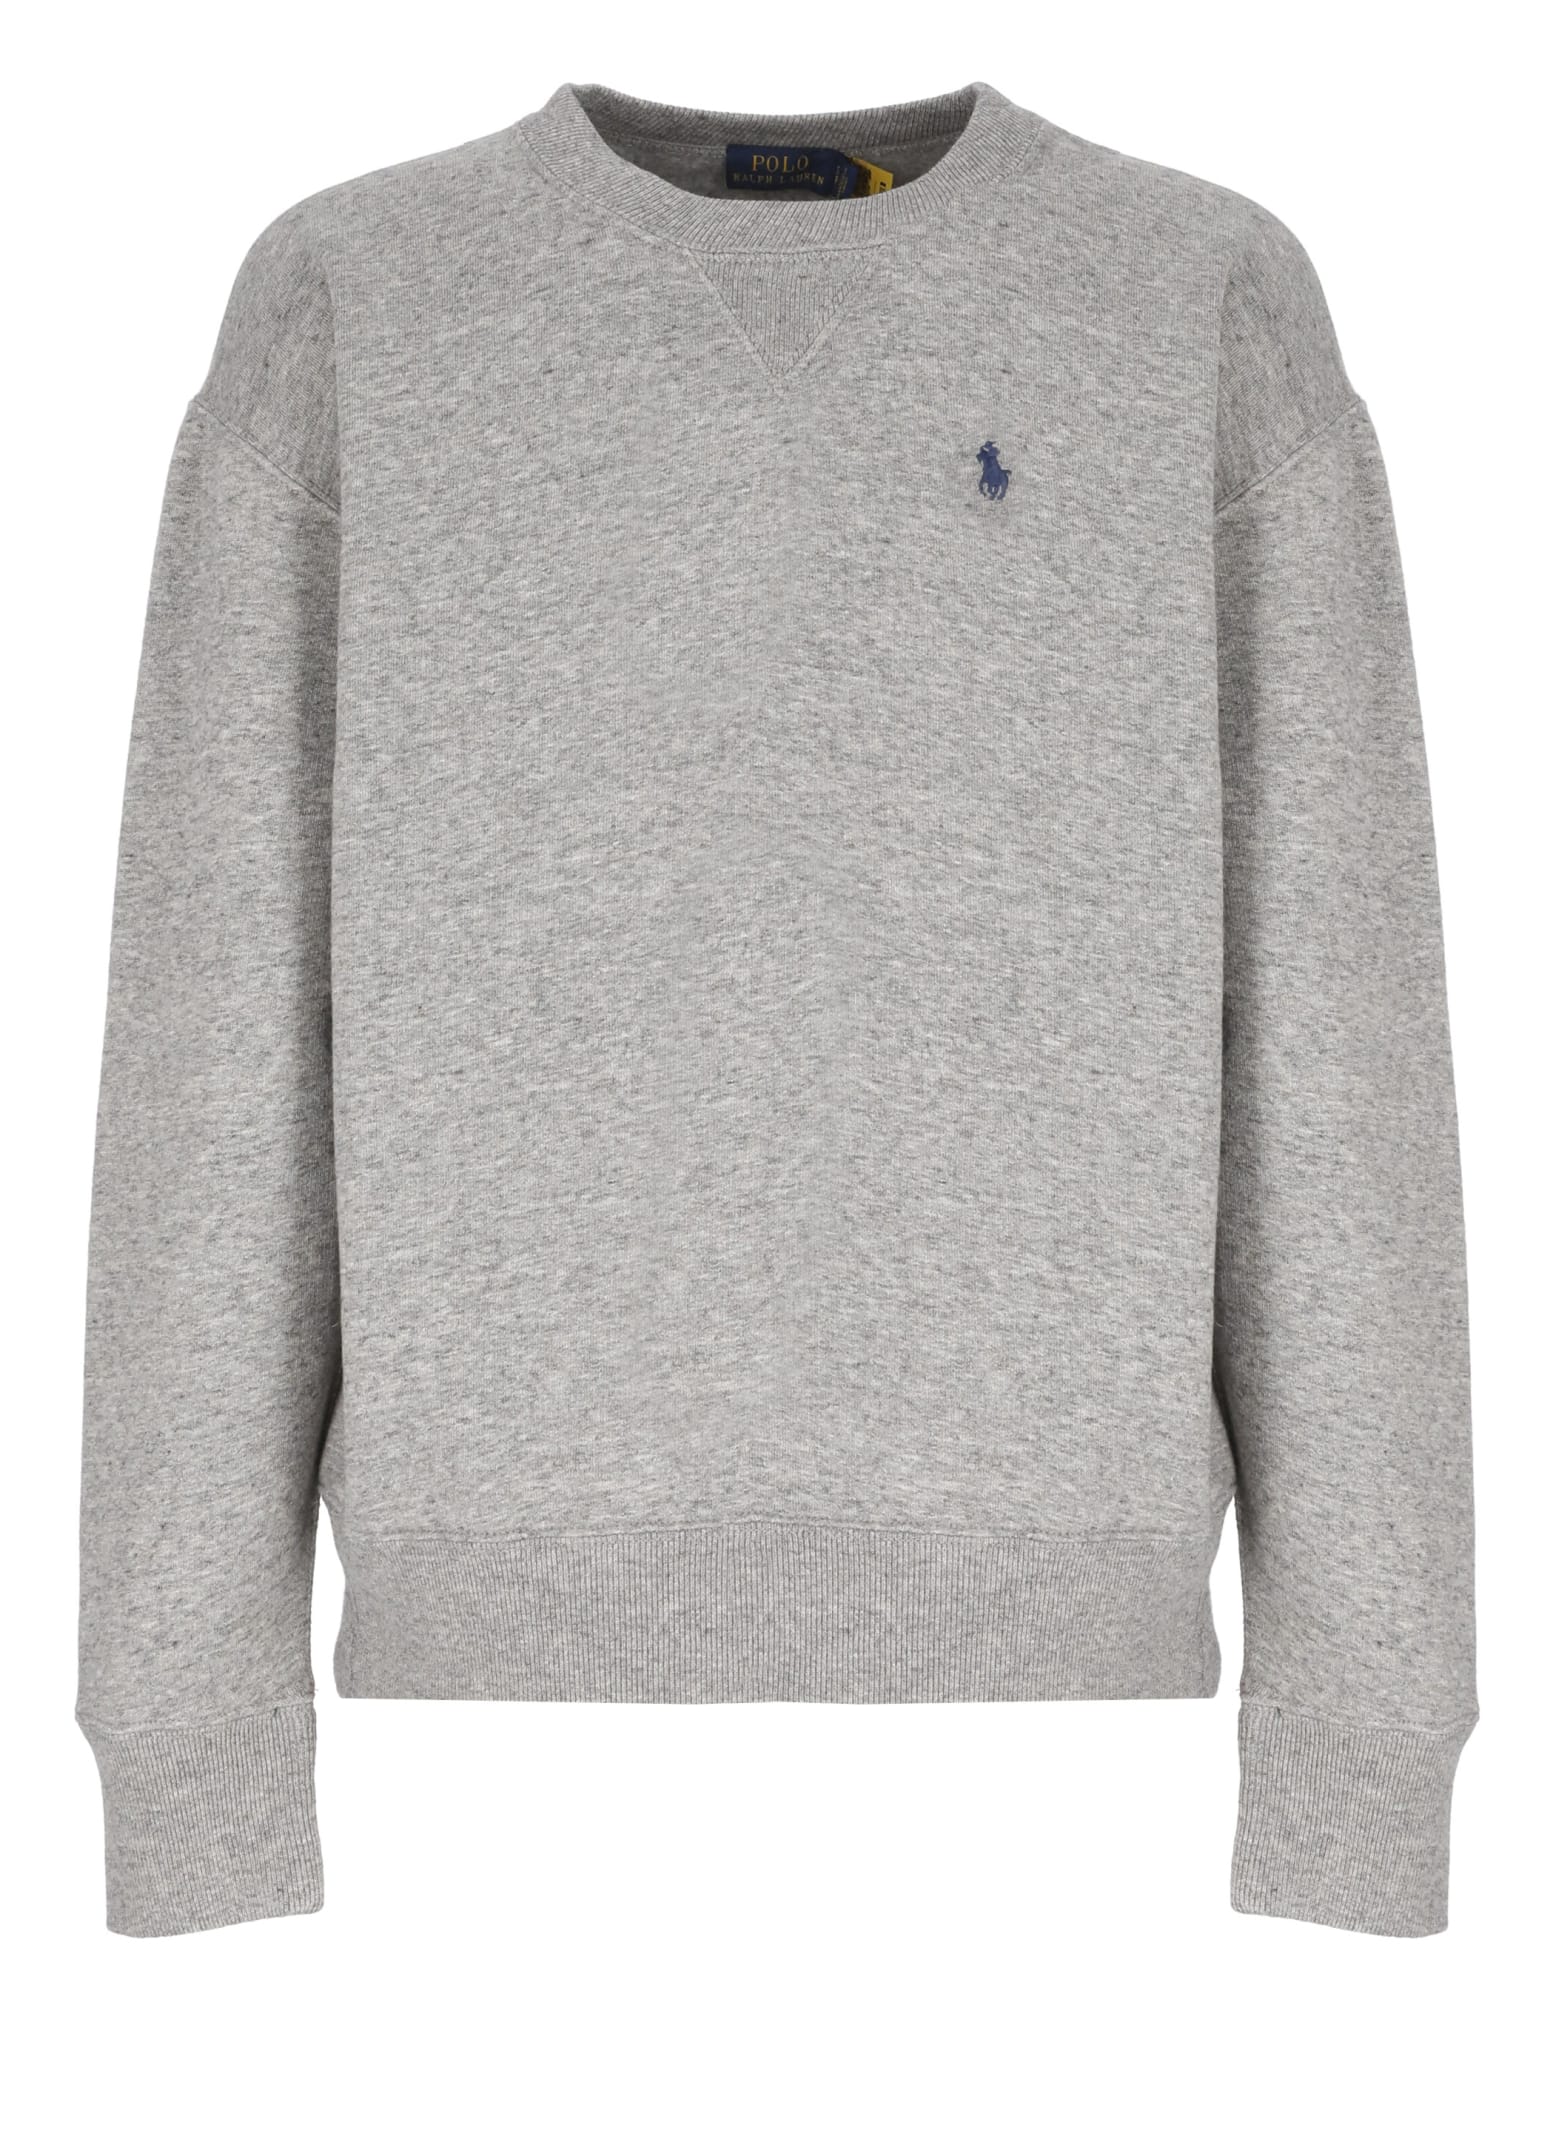 Ralph Lauren Sweatshirt With Logo